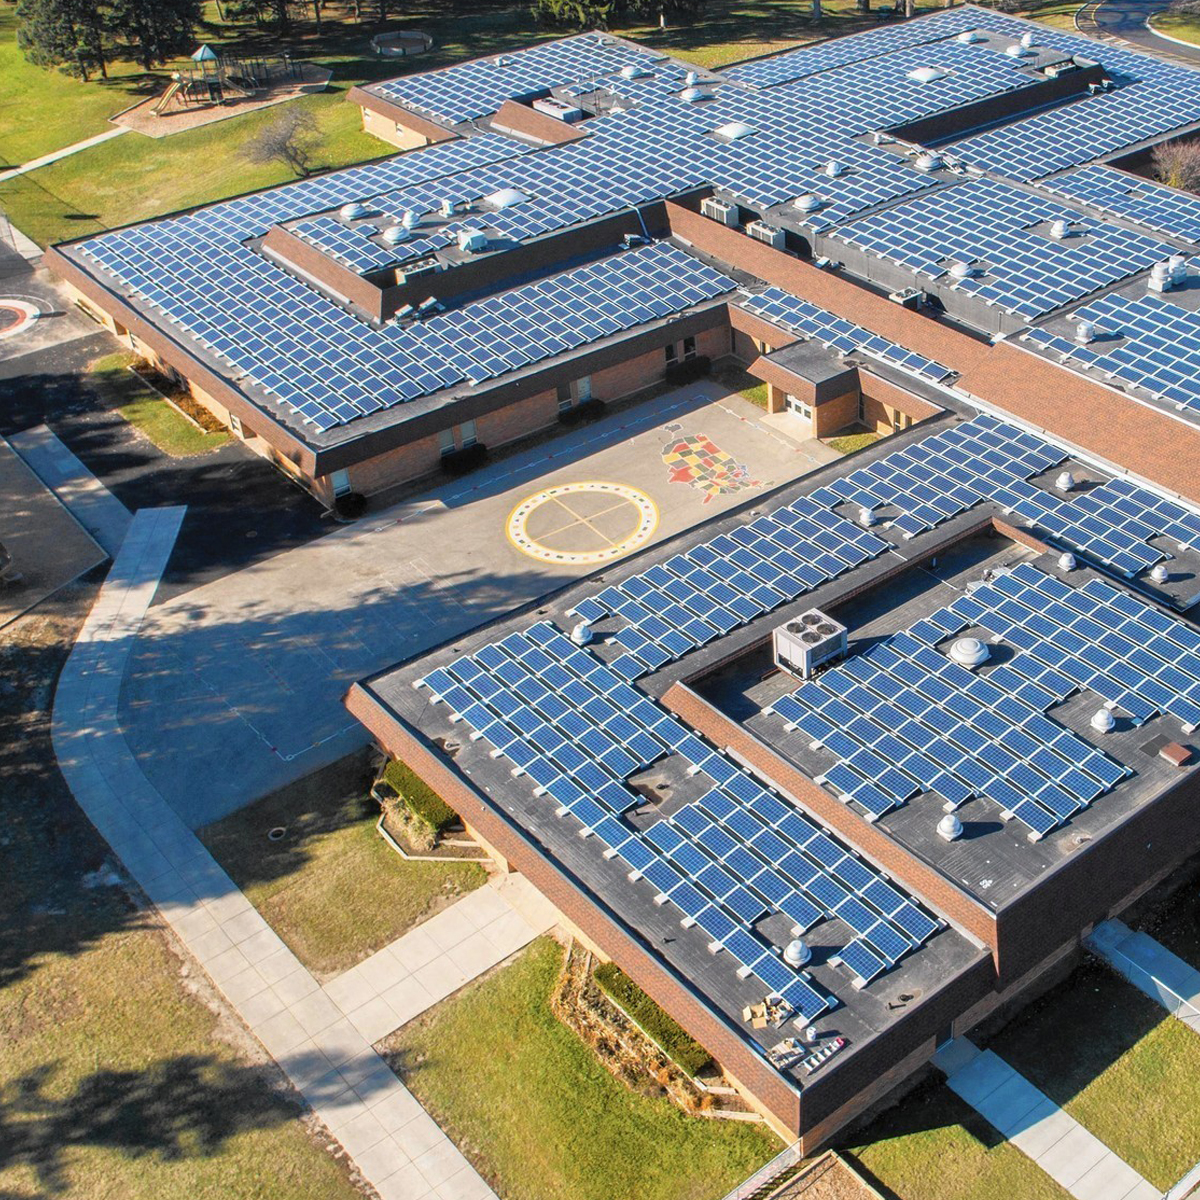 Why Schools Solar?